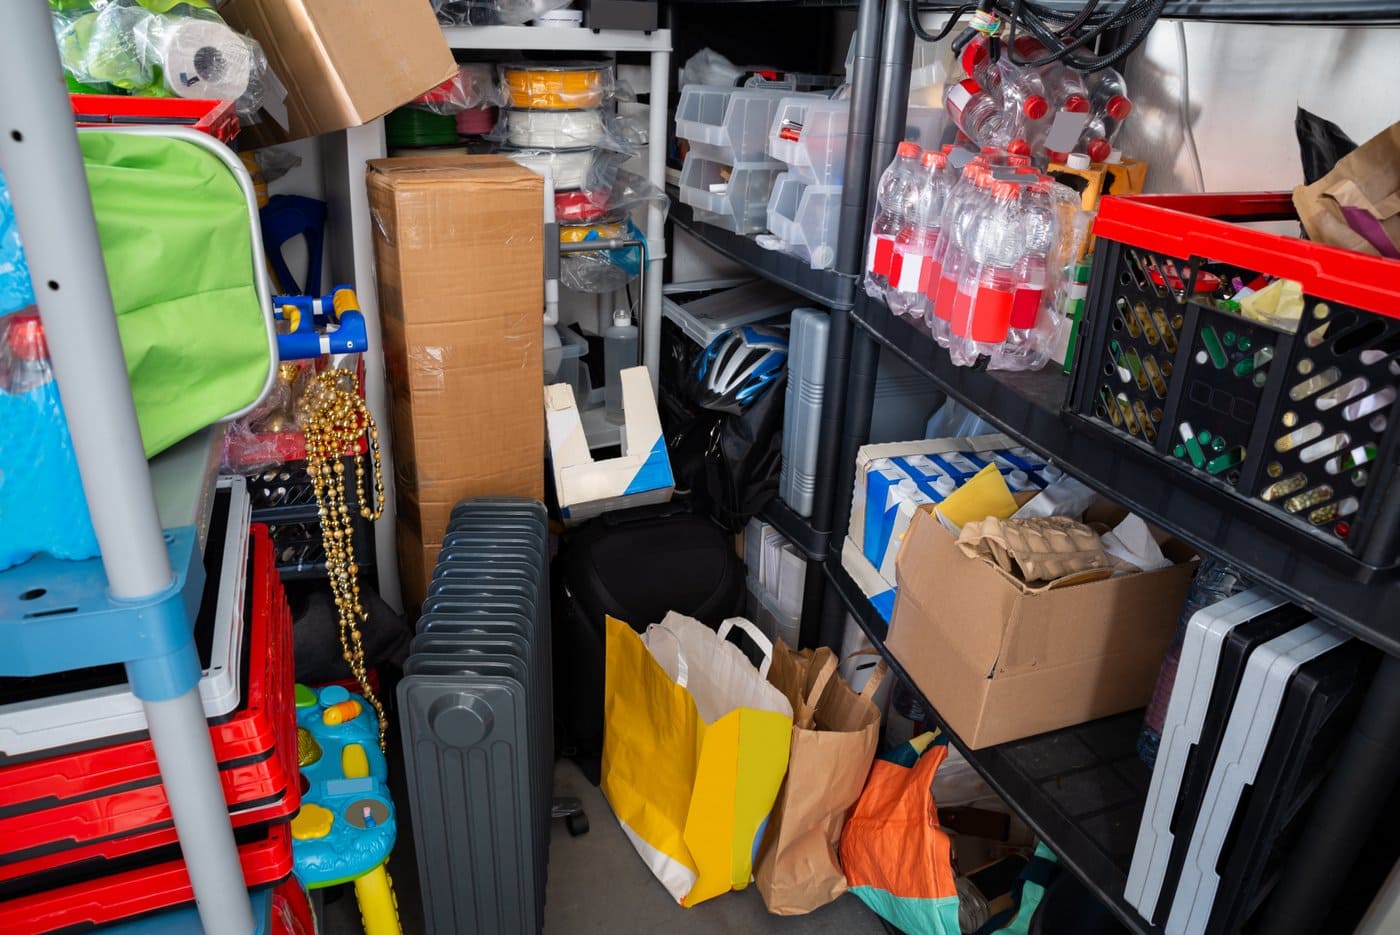 Packrat - too much stuff in garage storage space